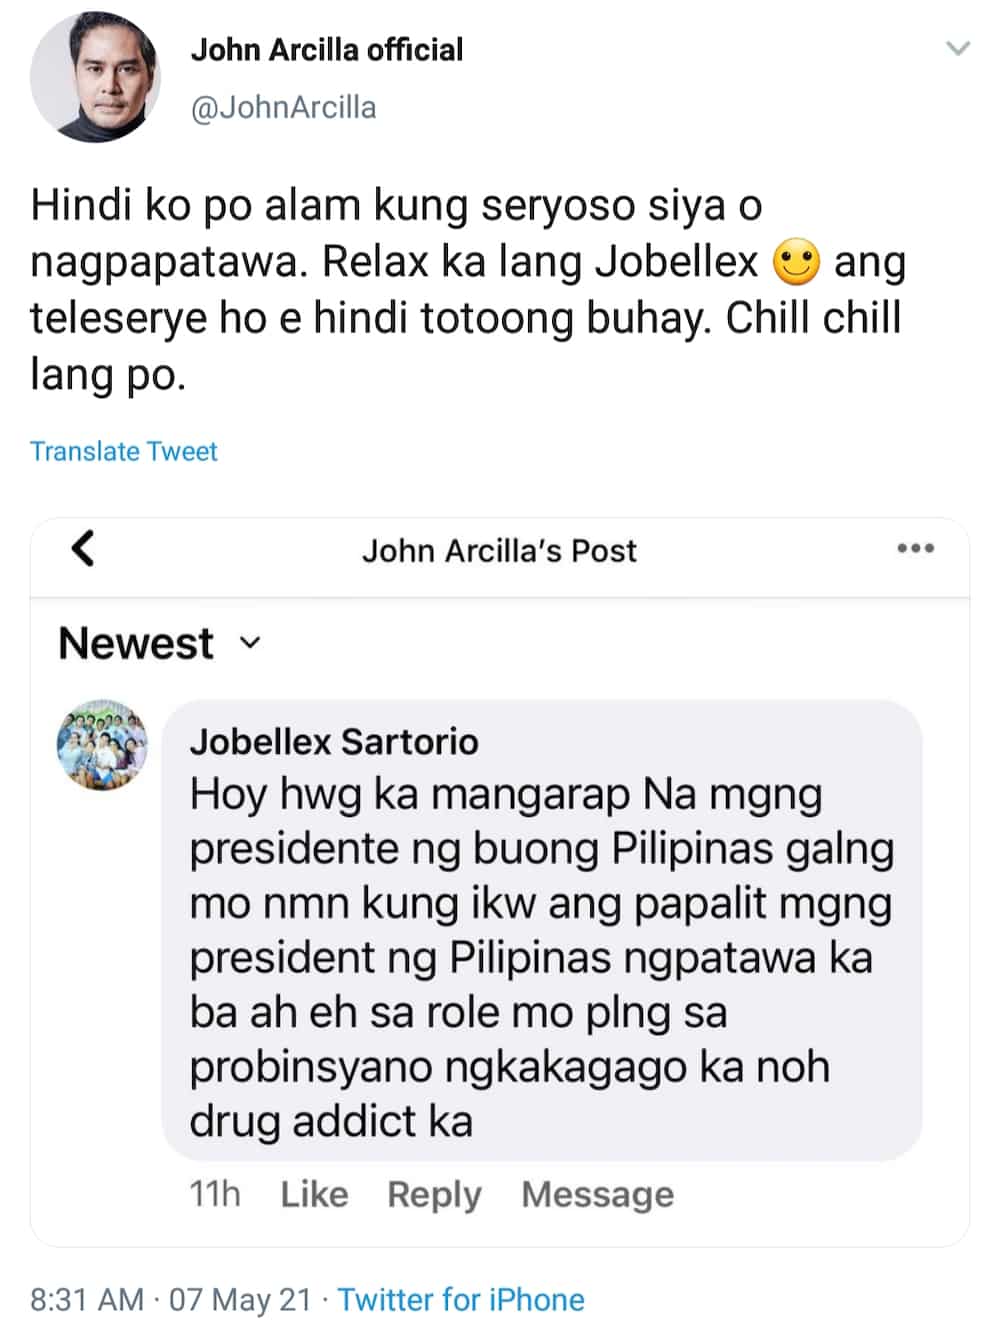 John Arcilla, umalma sa pang-iinsulto ng basher sa role niya: "Di ko alam kung seryos sya"